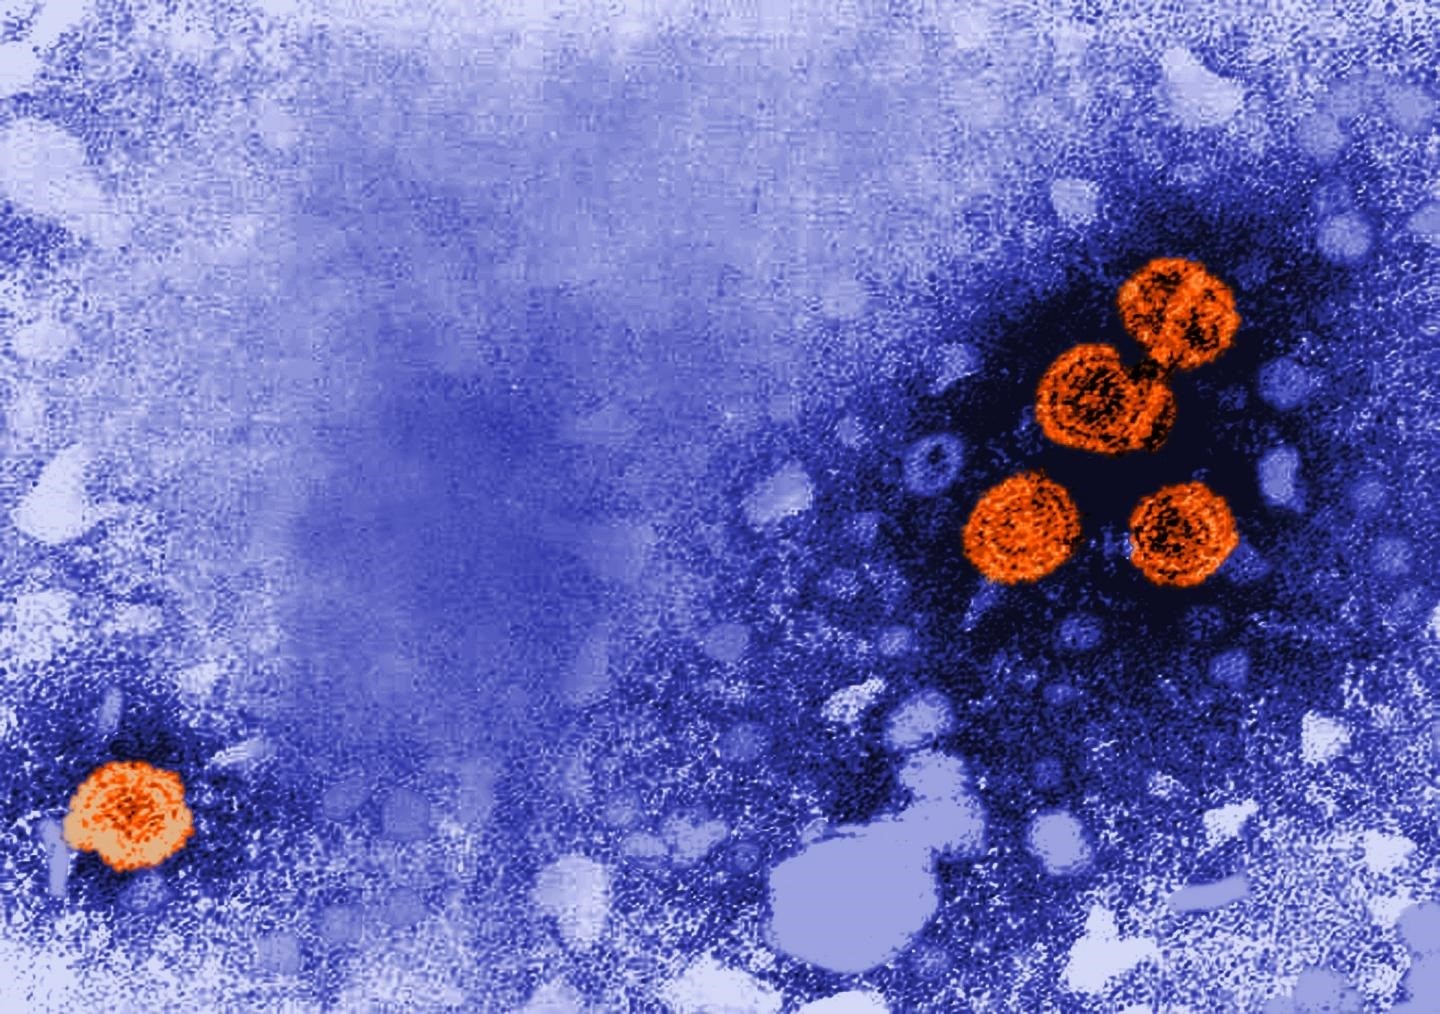 Detalle de la Imagen de microscopía electrónica de transmisión coloreada digitalmente revela la presencia de viriones de la hepatitis B (de color naranja)
SALUD
CDC/DR. ERSKINE PALMER
